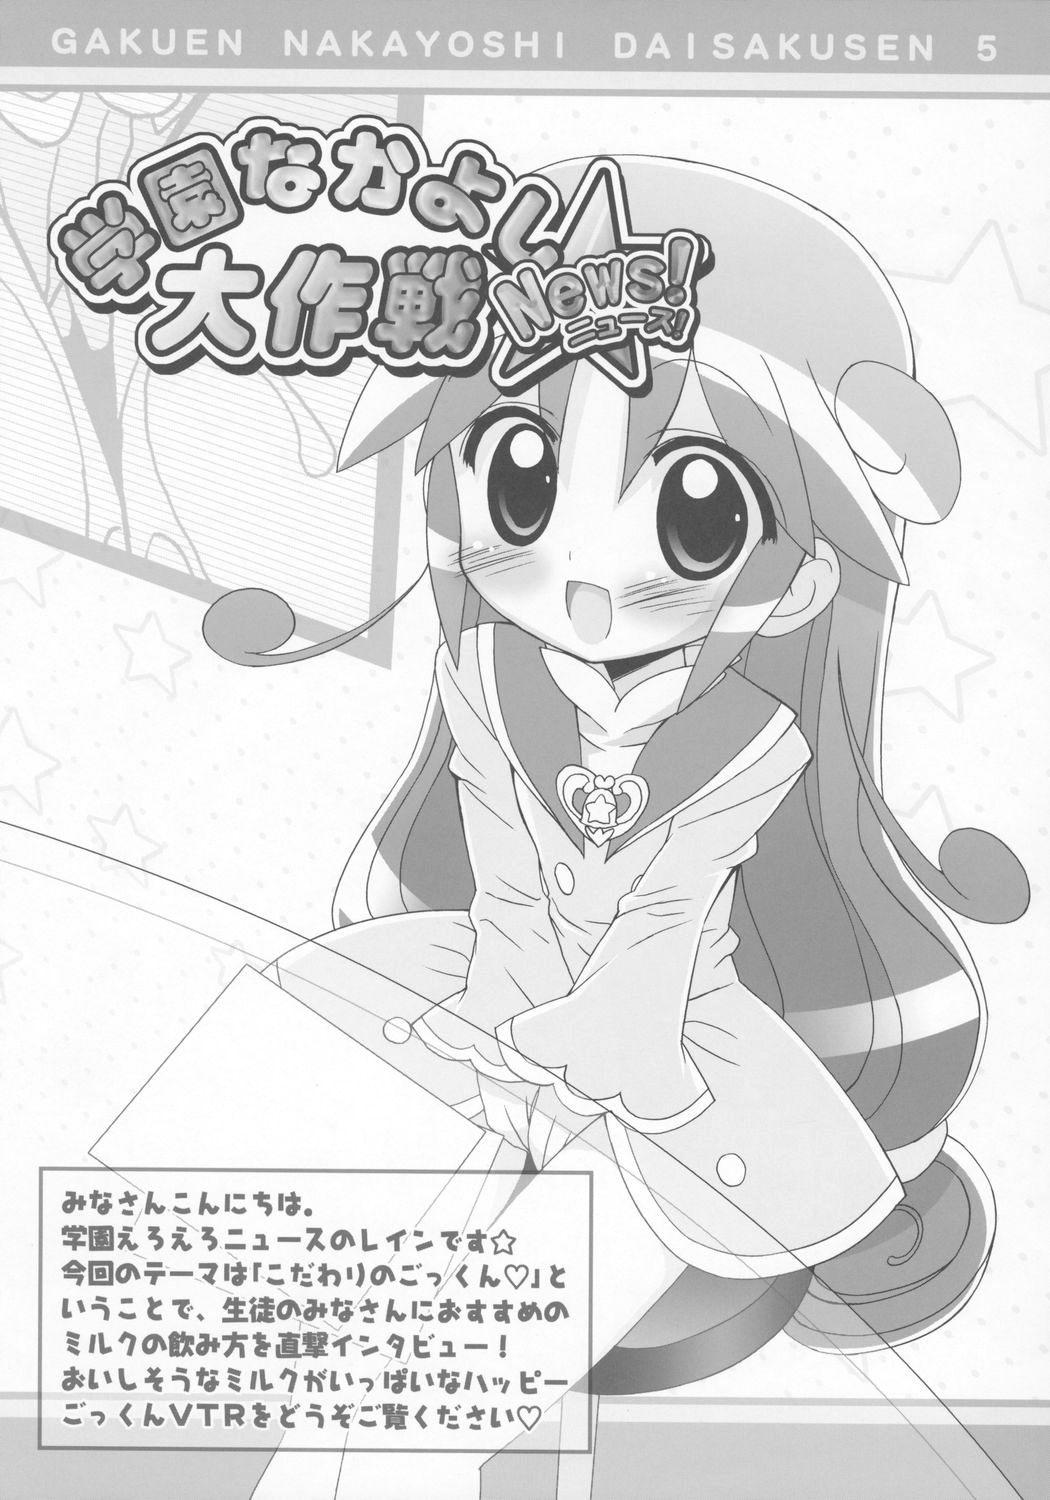 Long Hair Gakuen Nakayoshi Daisakusen Gokkun! - Fushigiboshi no futagohime Machine - Page 10